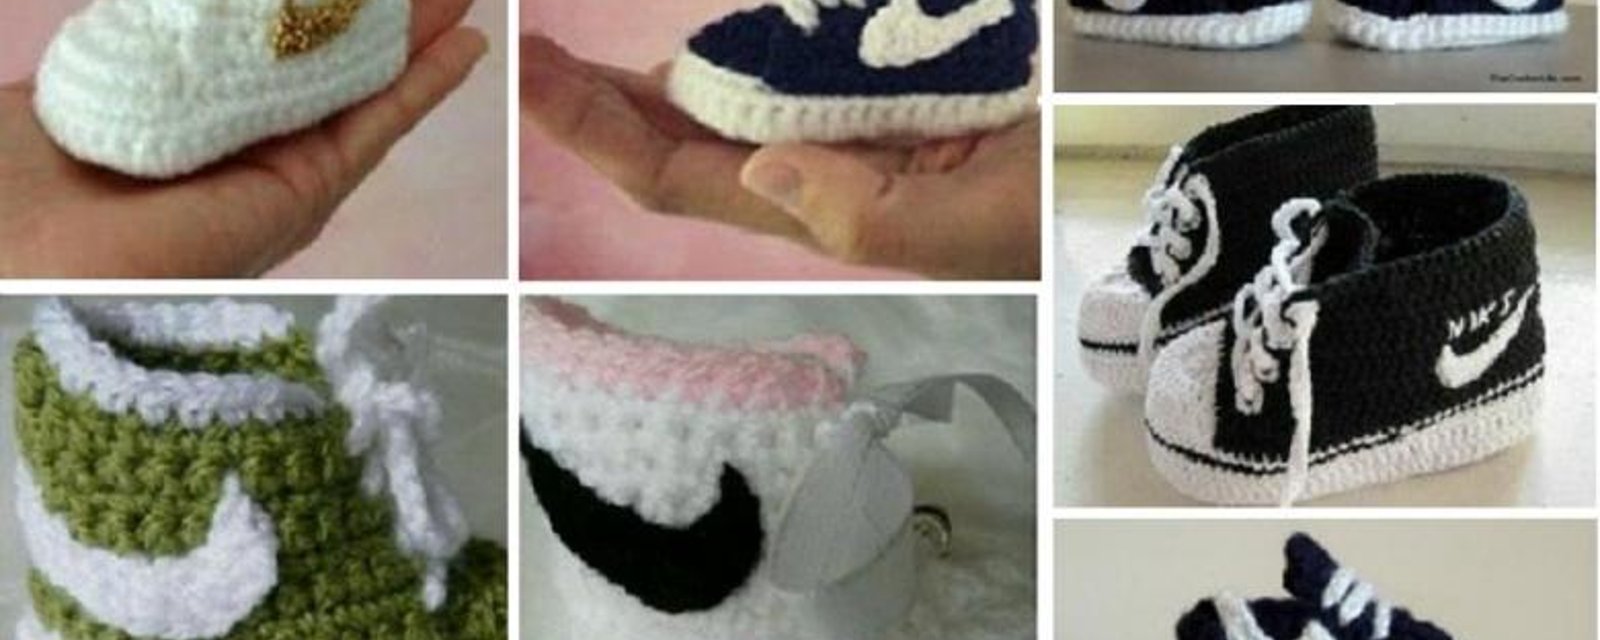 Un patron gratuit pour crocheter des pantoufles style Nike pour bébé! 